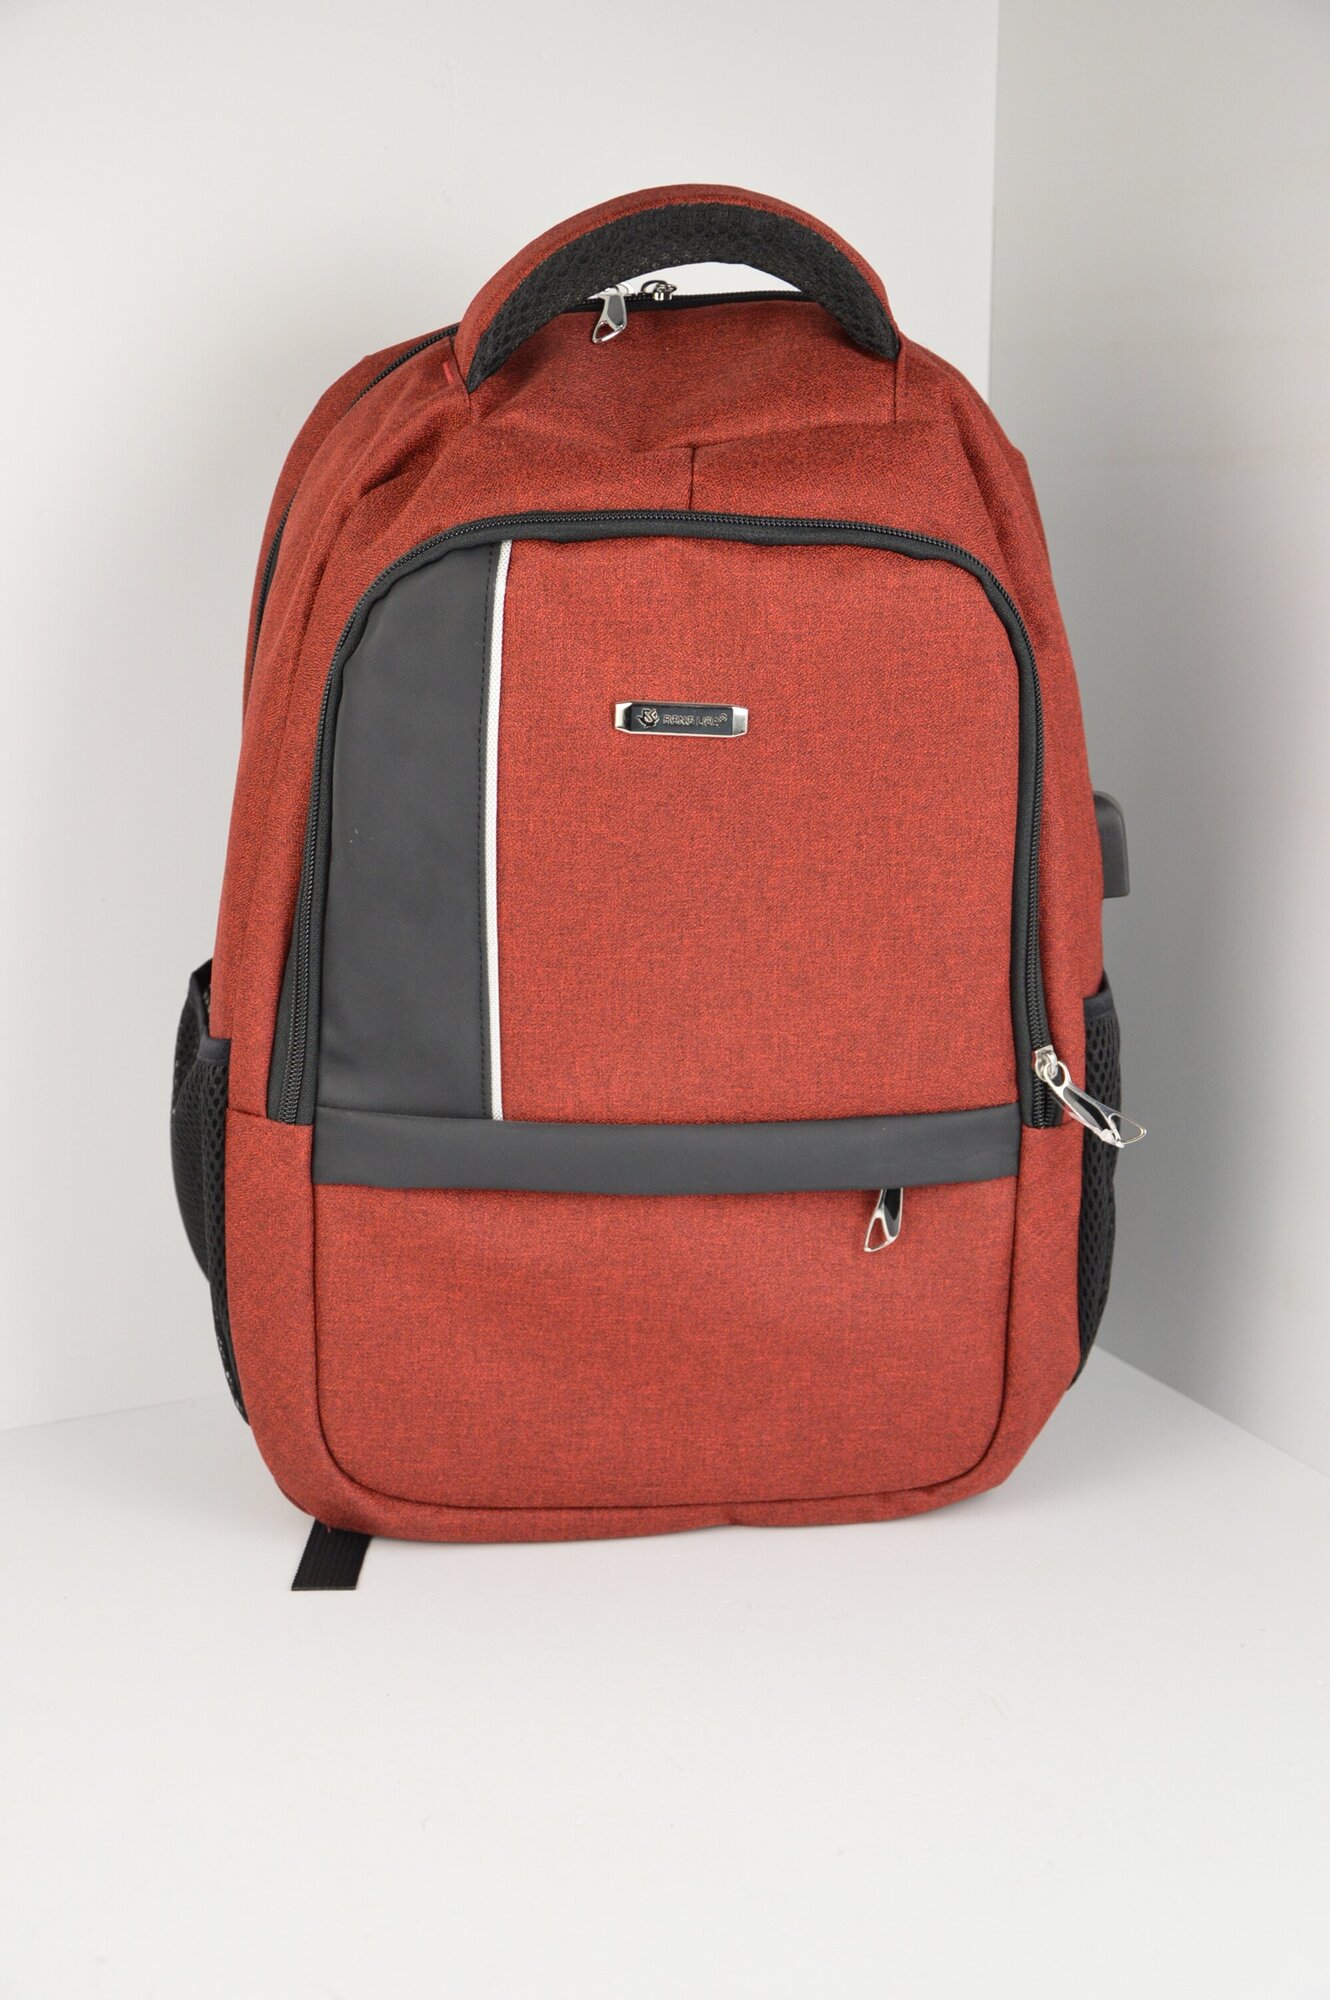 Рюкзак молодежный с USB бордовый / рюкзаки, ранцы